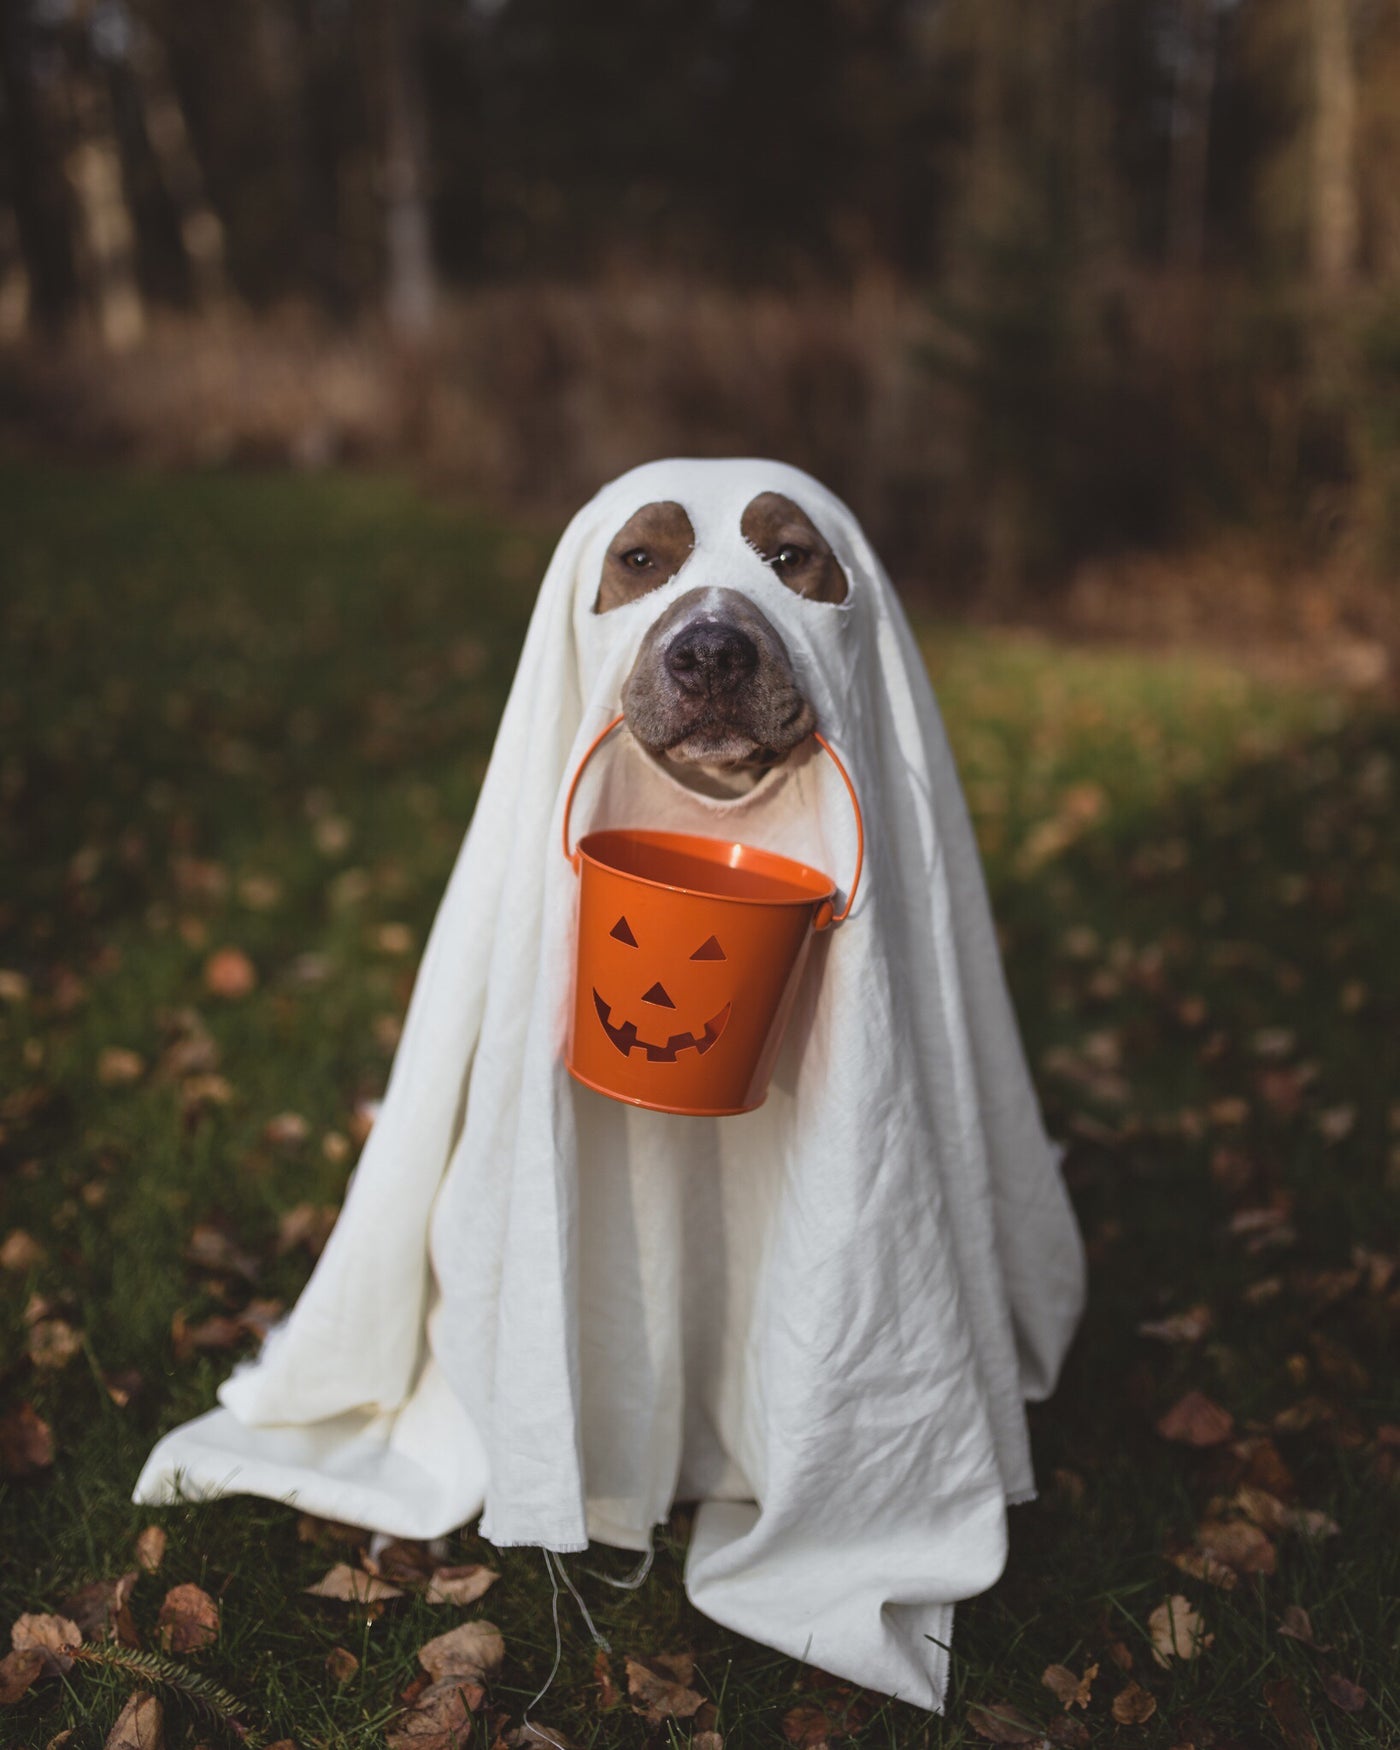 Avoiding Halloween Dangers